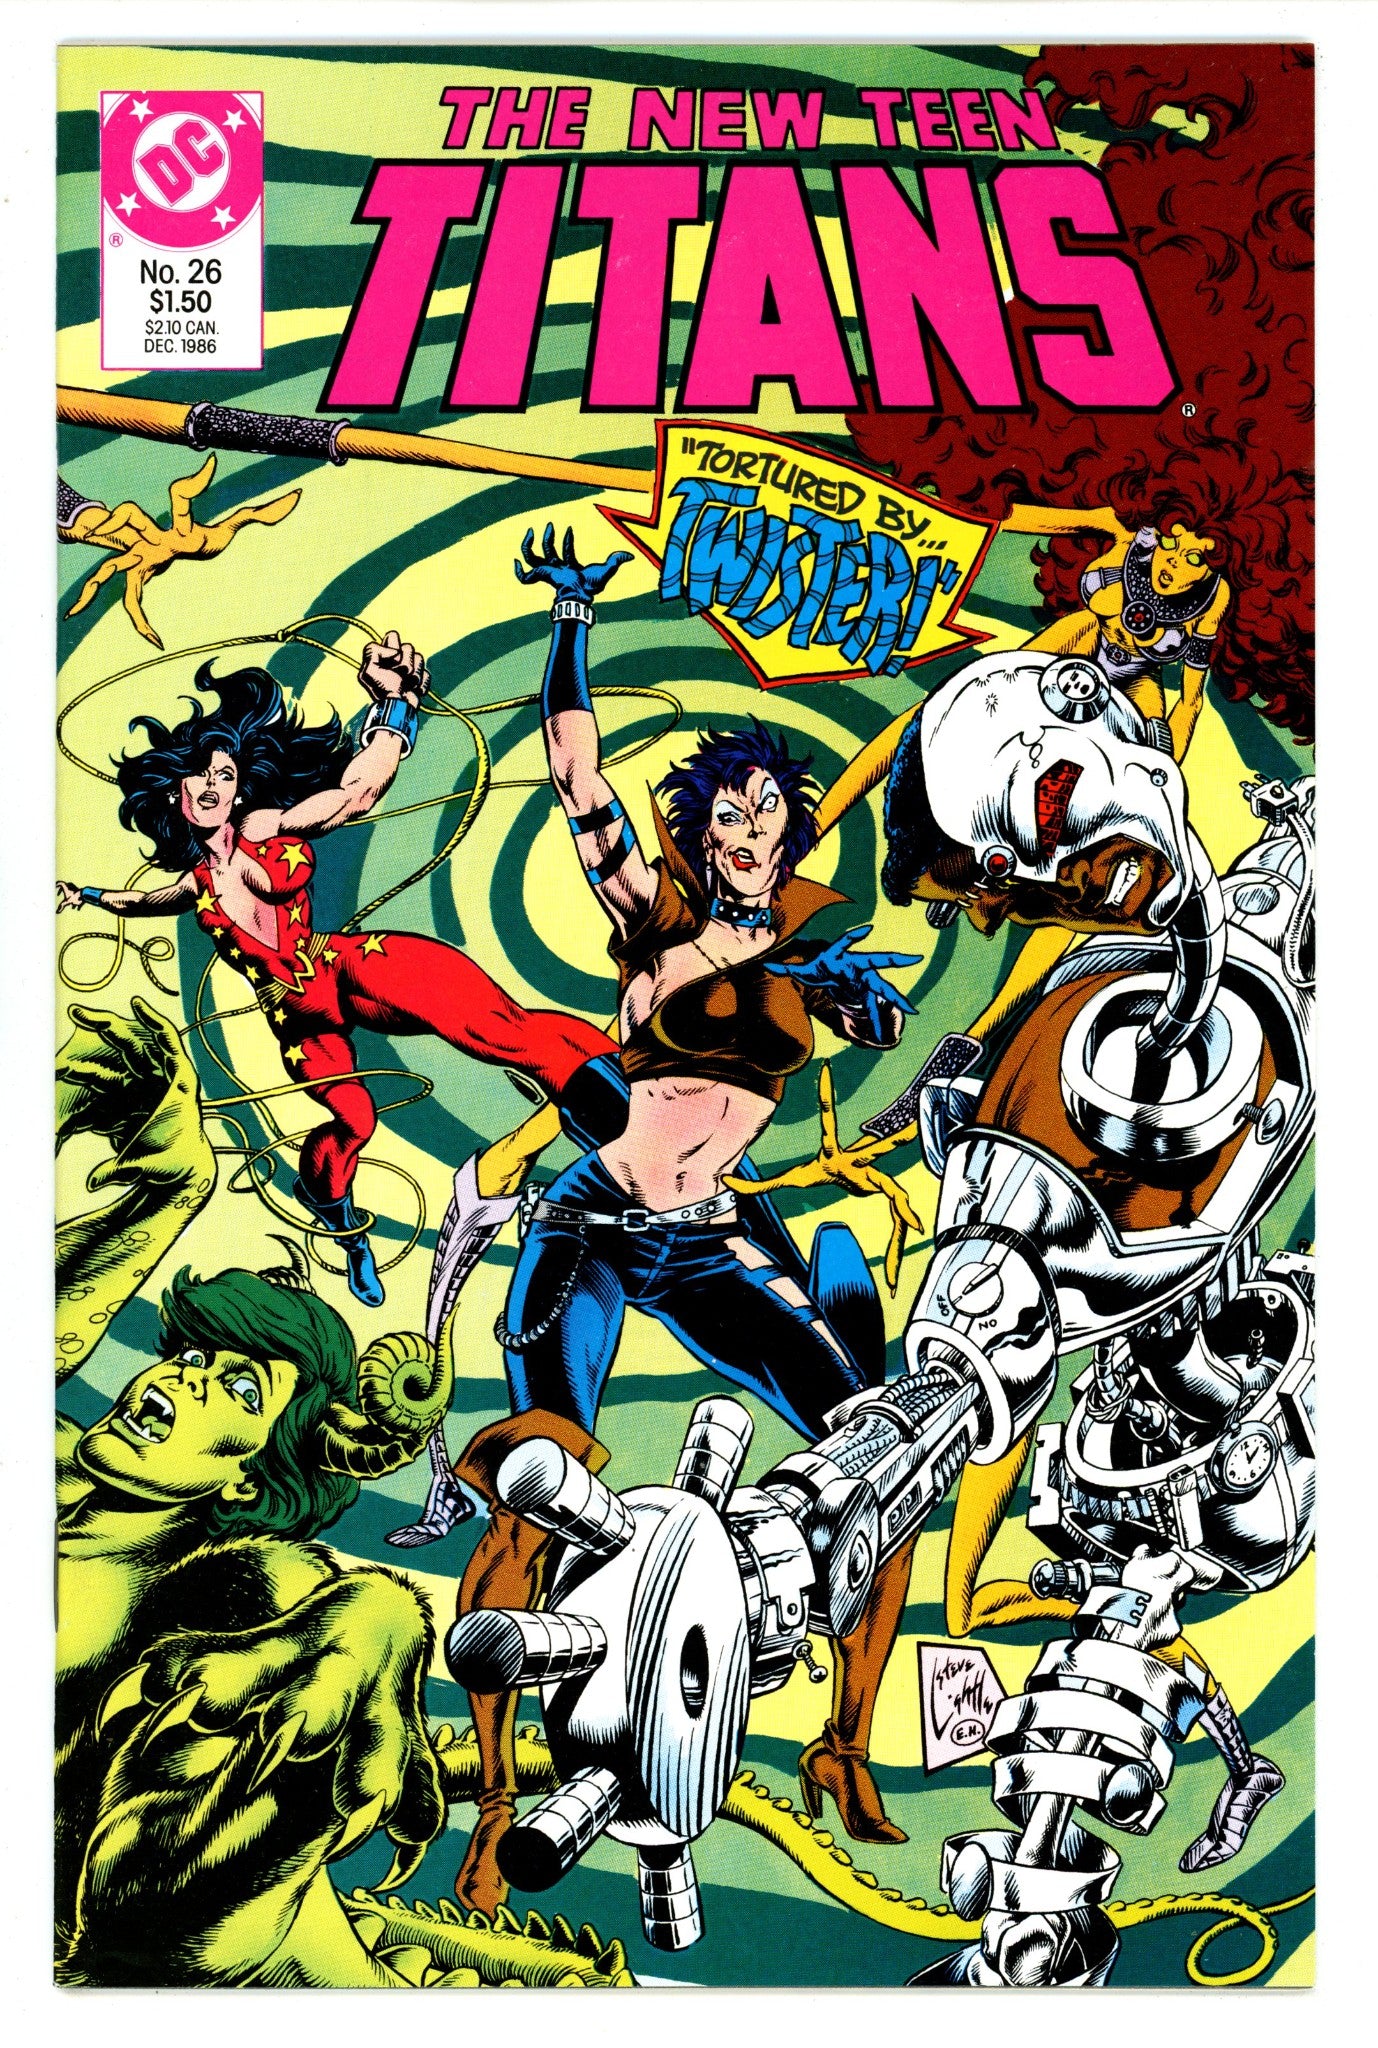 The New Teen Titans Vol 2 26 High Grade (1986) 